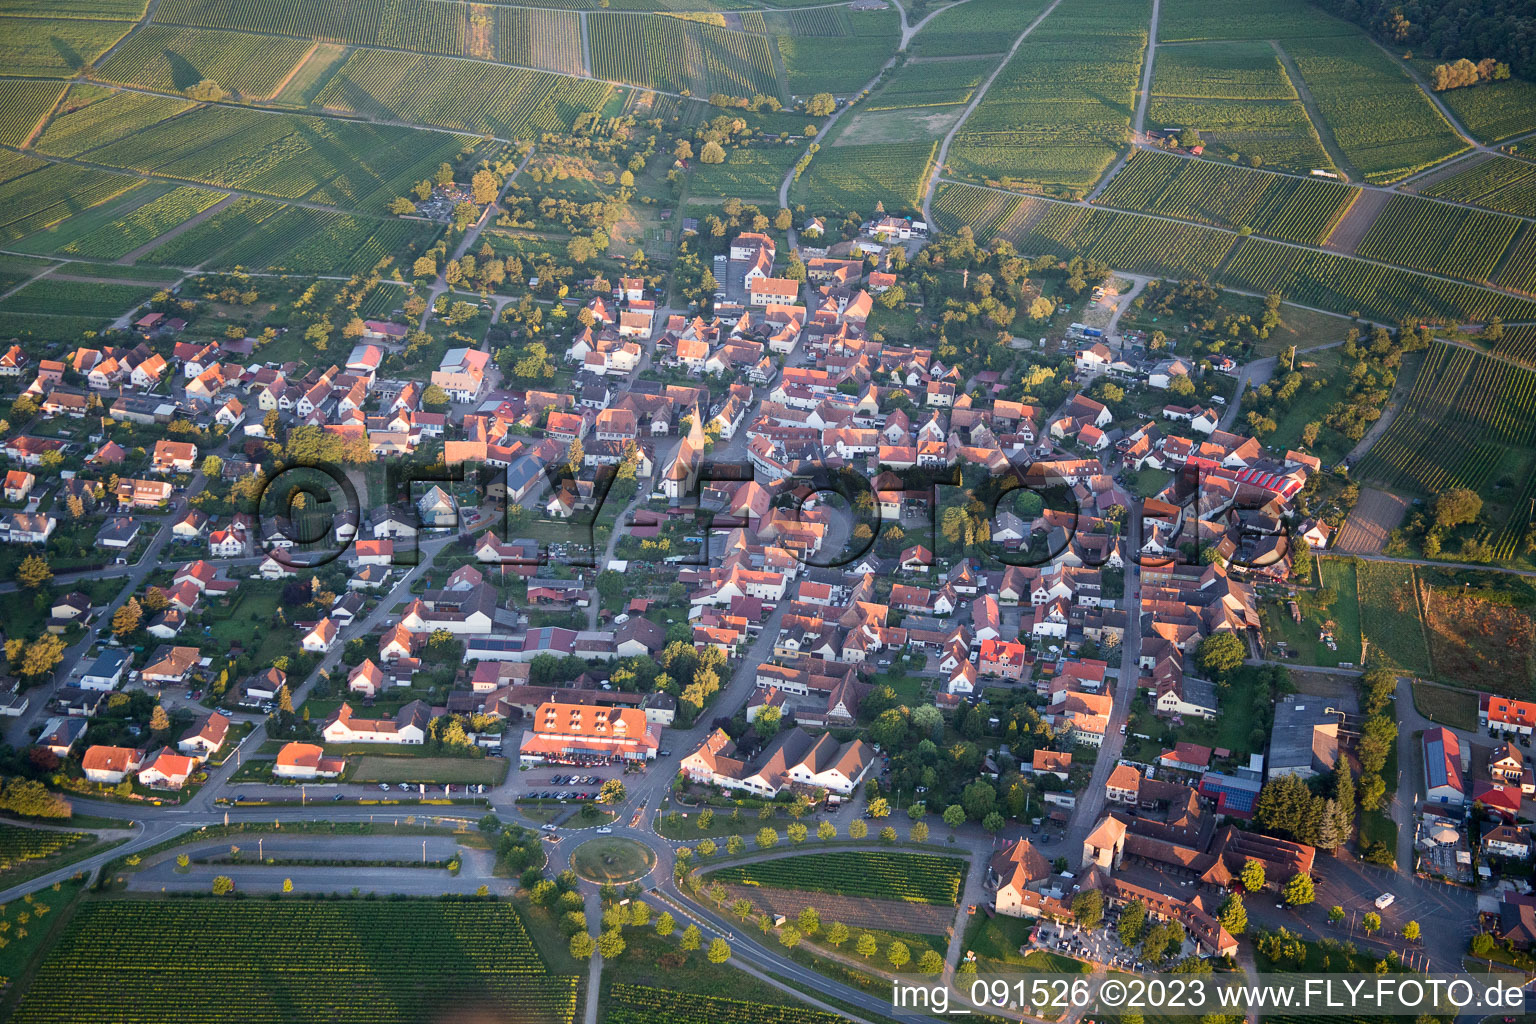 Drone image of District Rechtenbach in Schweigen-Rechtenbach in the state Rhineland-Palatinate, Germany